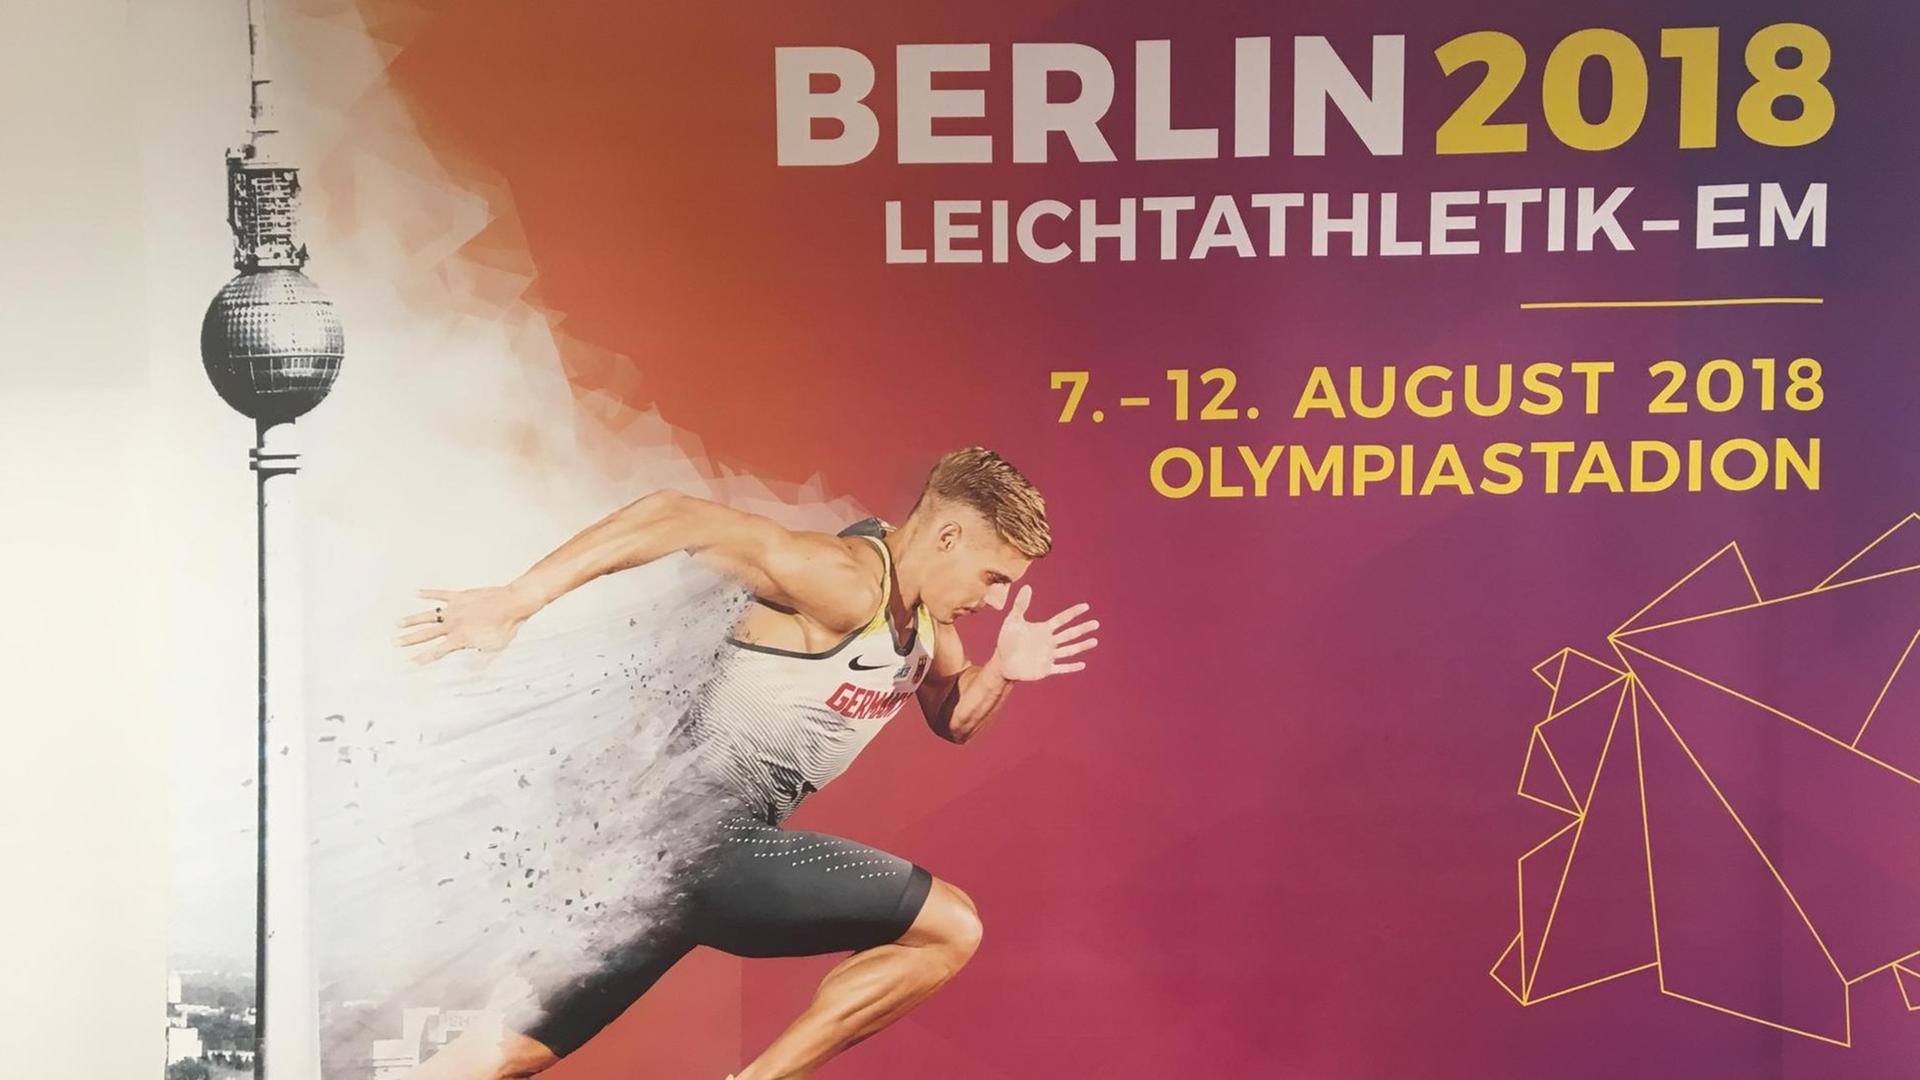 Ein Werbe-Plakat für die Leichtathletik-EM 2018 in Berlin.